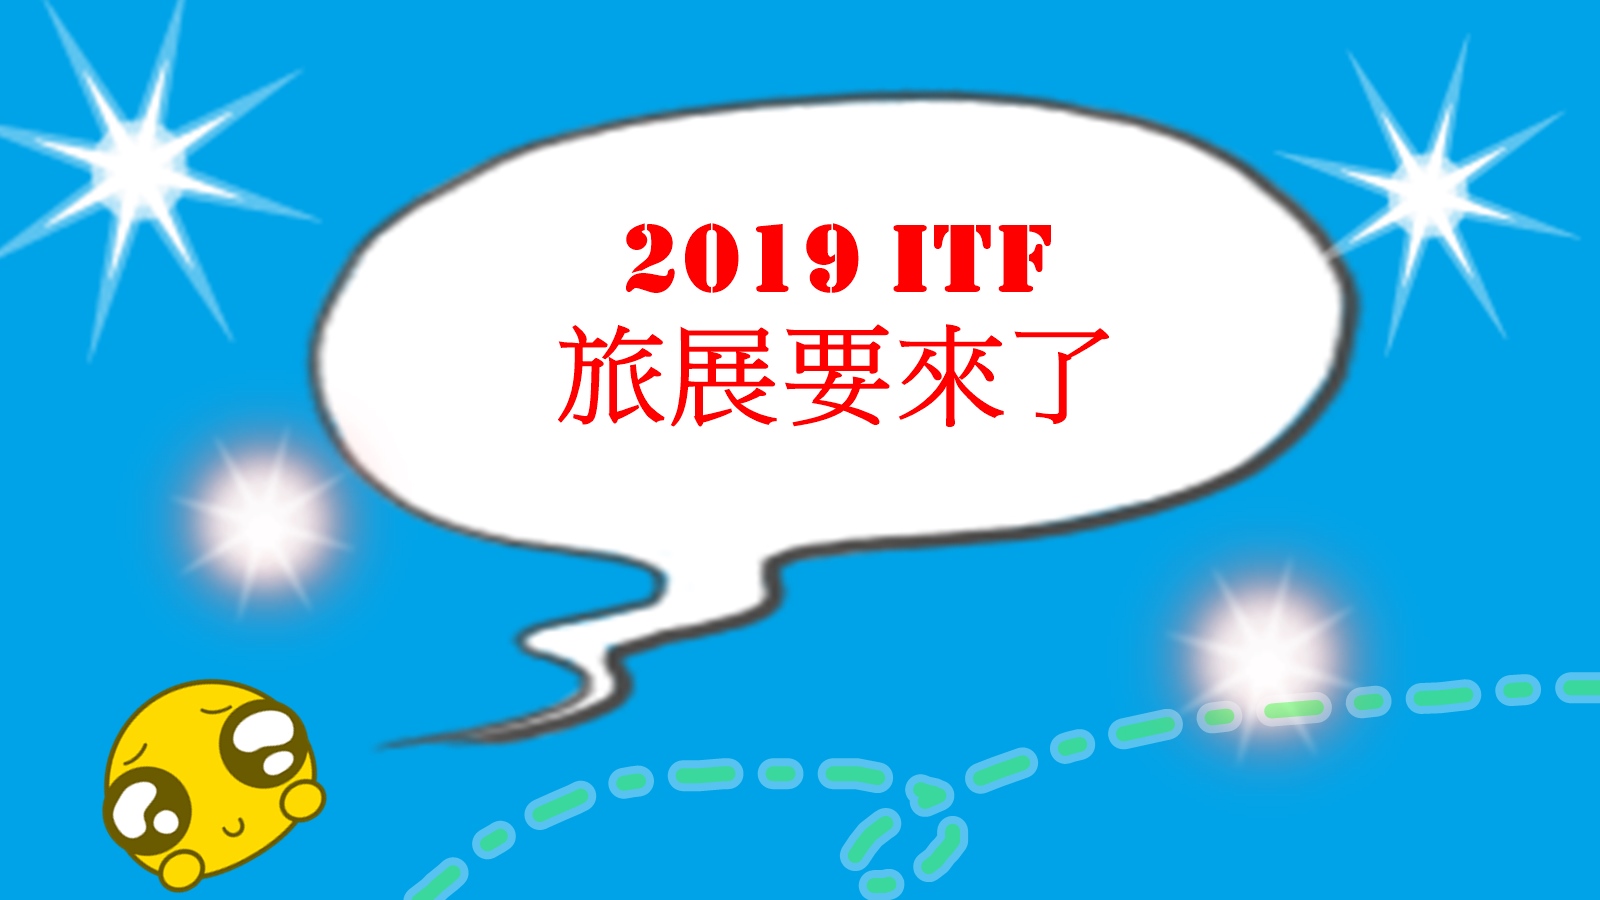 2019台北國際旅展,2019線上旅展,itf,台北國際旅展,線上旅展